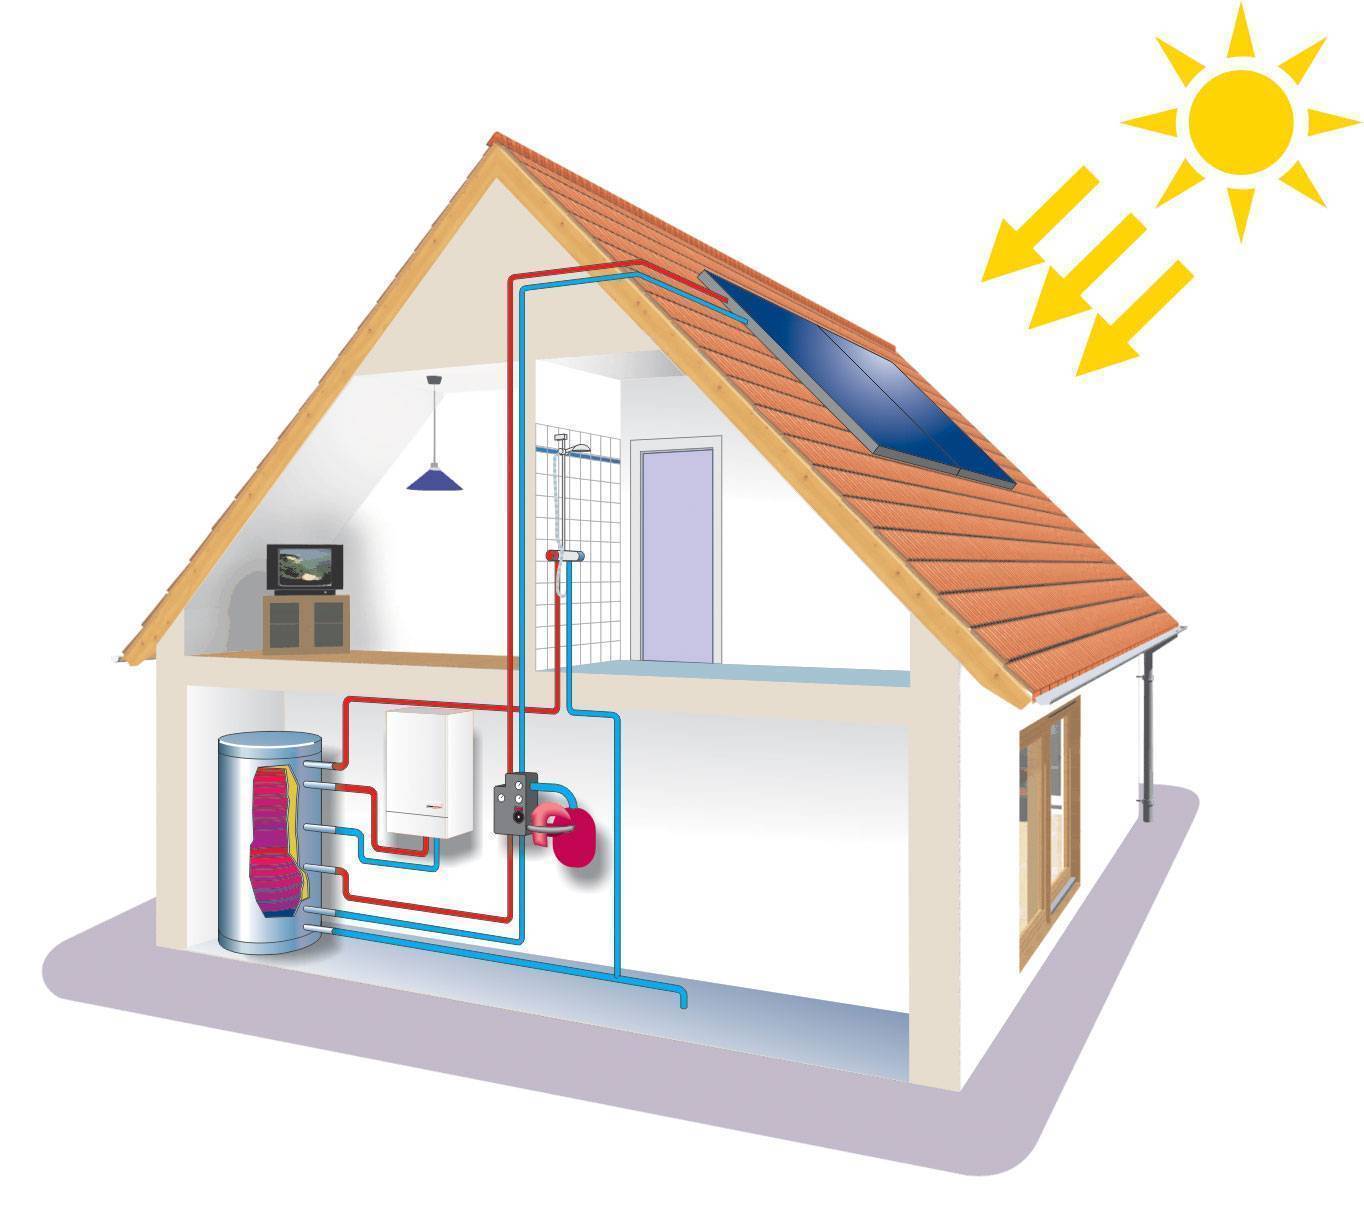 Энергосберегающее отопление: как сберечь тепло в отопительной системе